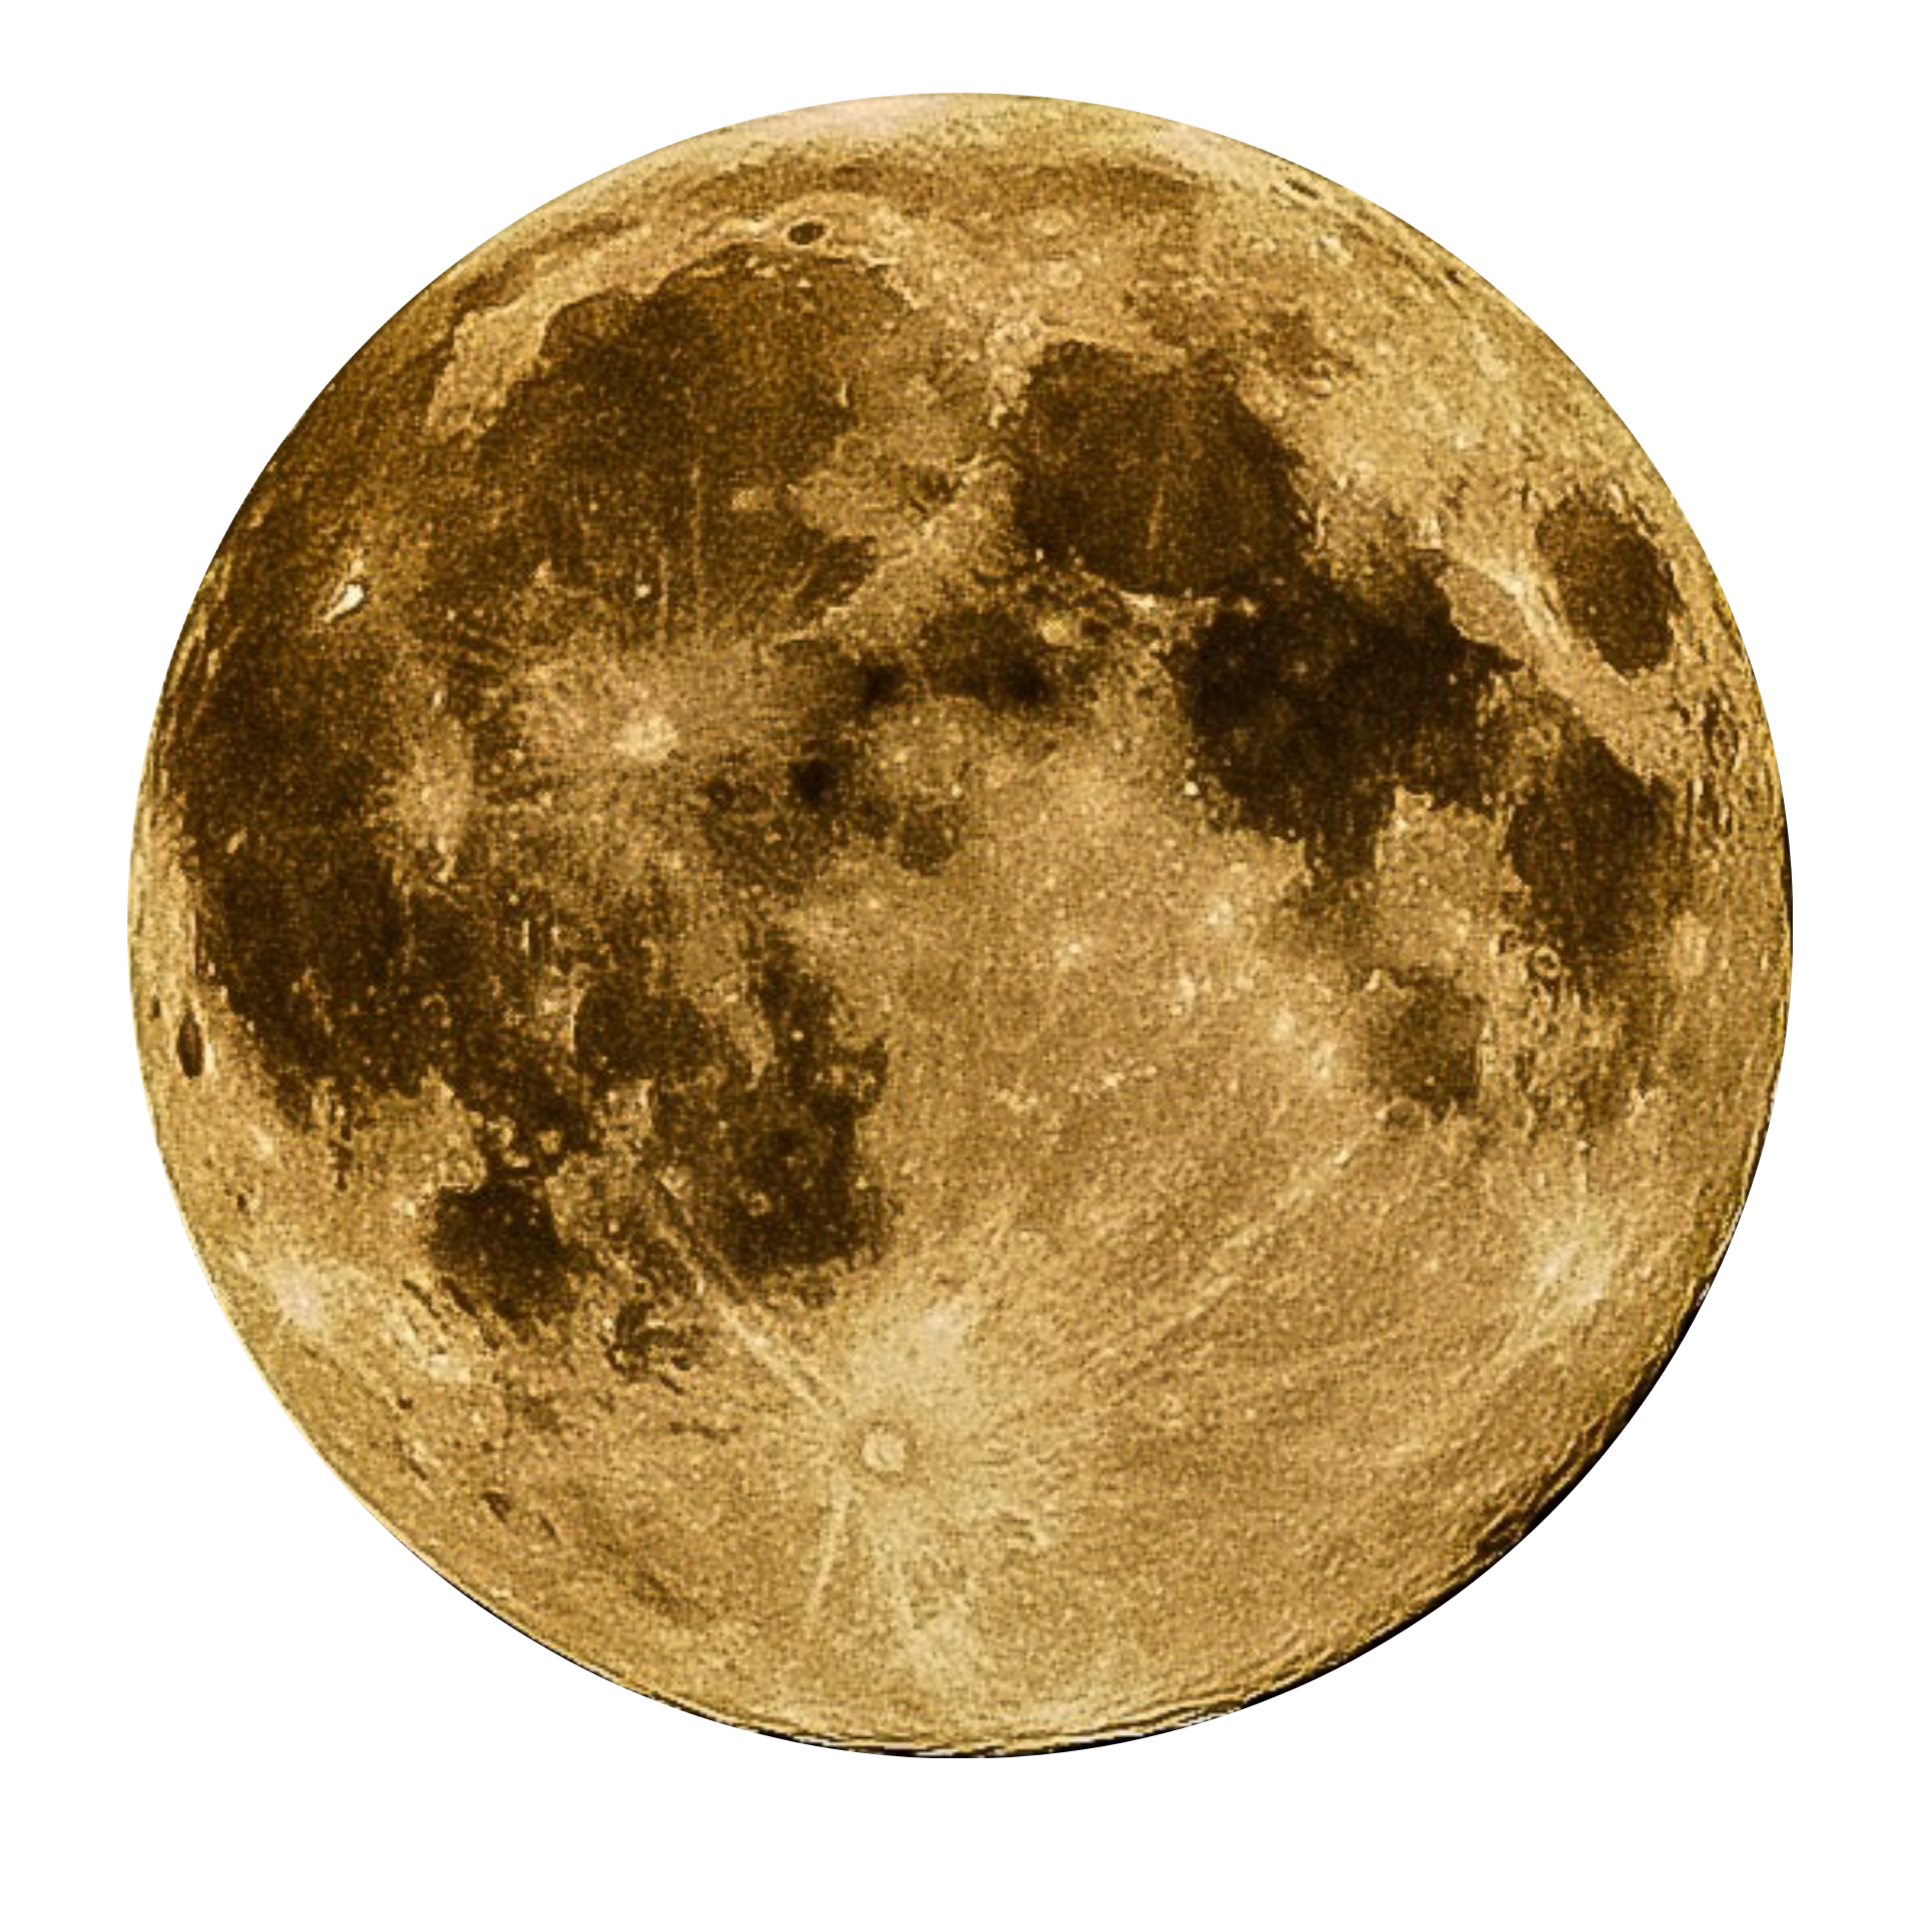 moon-60